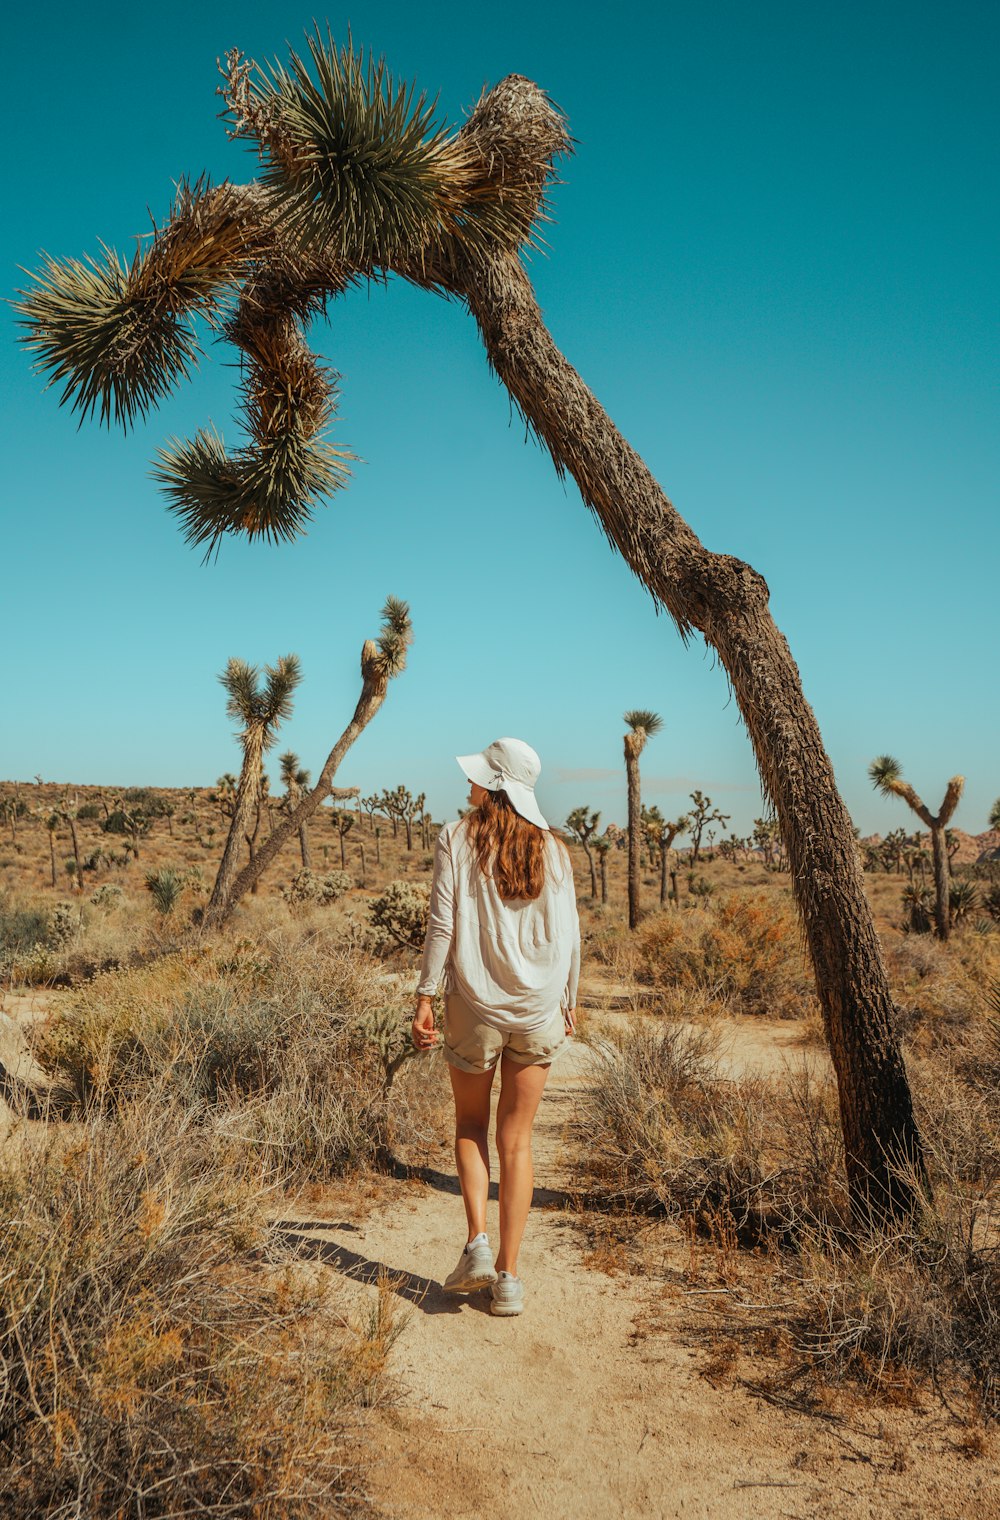 Una mujer caminando por un camino de tierra junto a una palmera